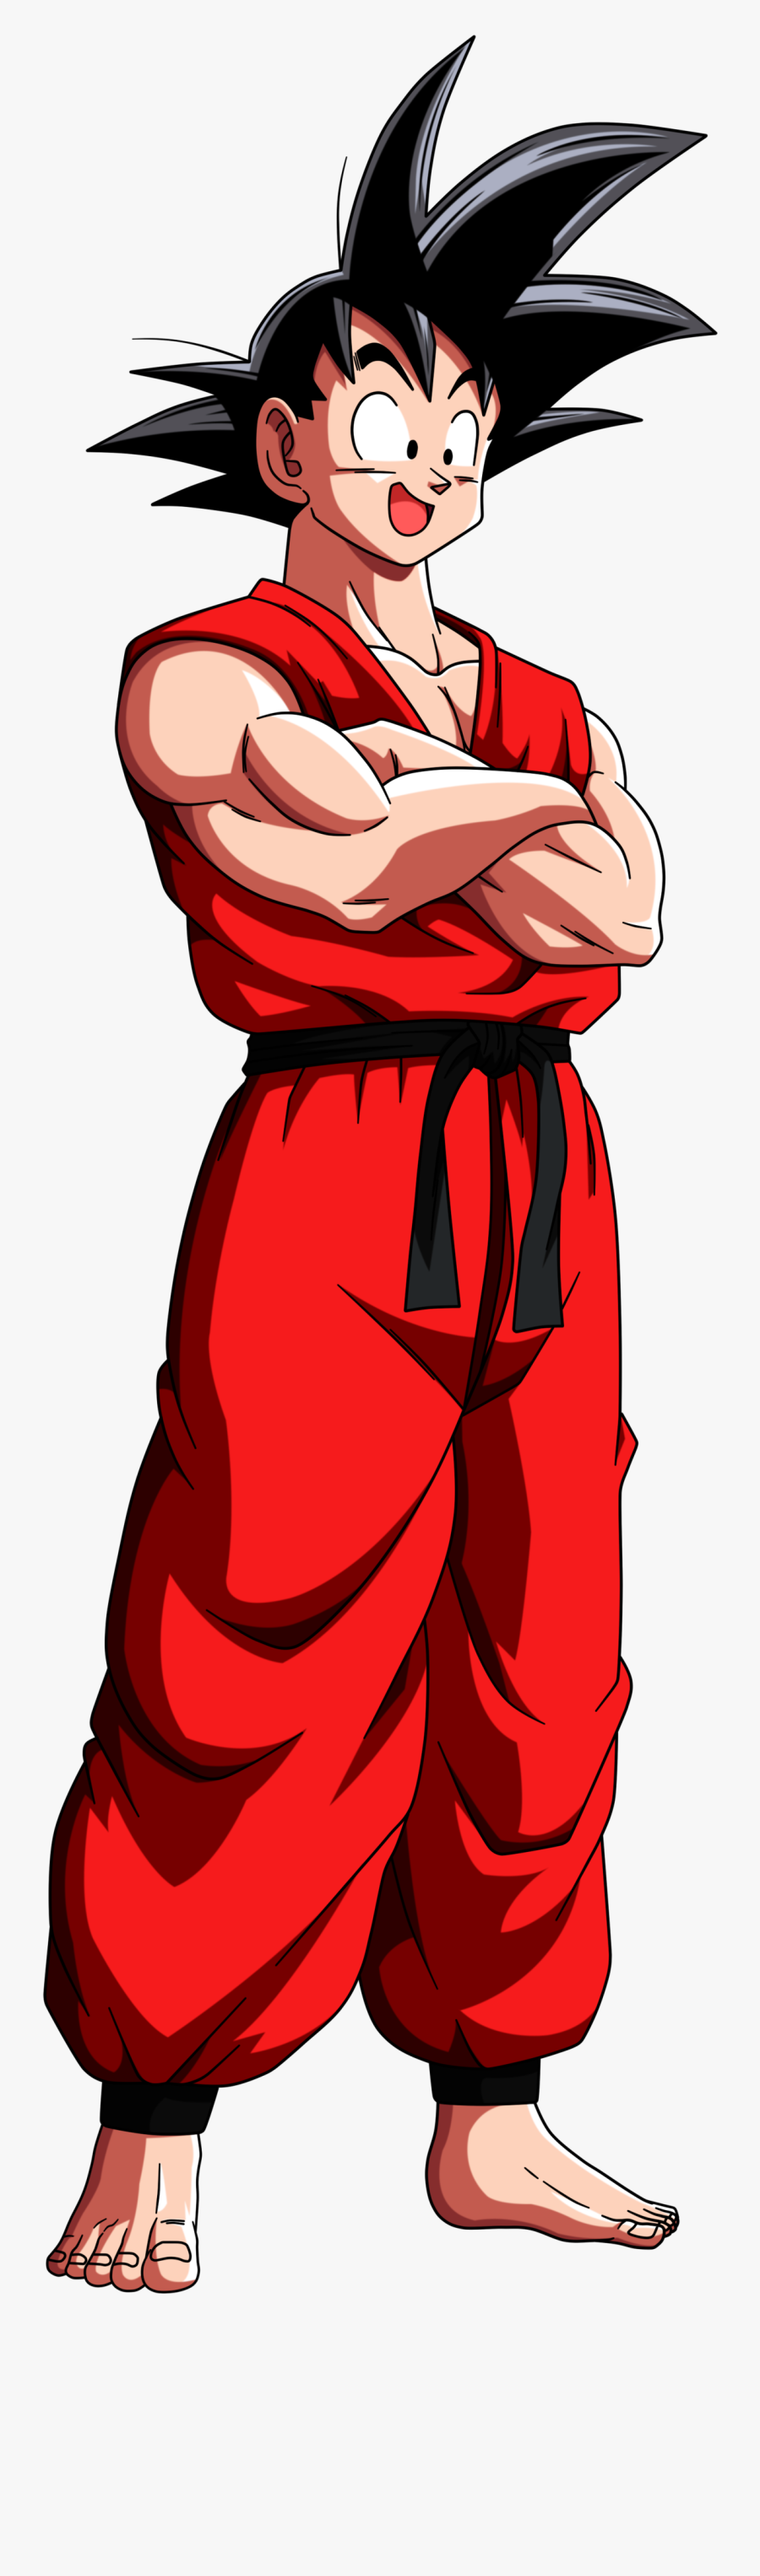 Transparent Goku - Goku Joven Png, Transparent Clipart